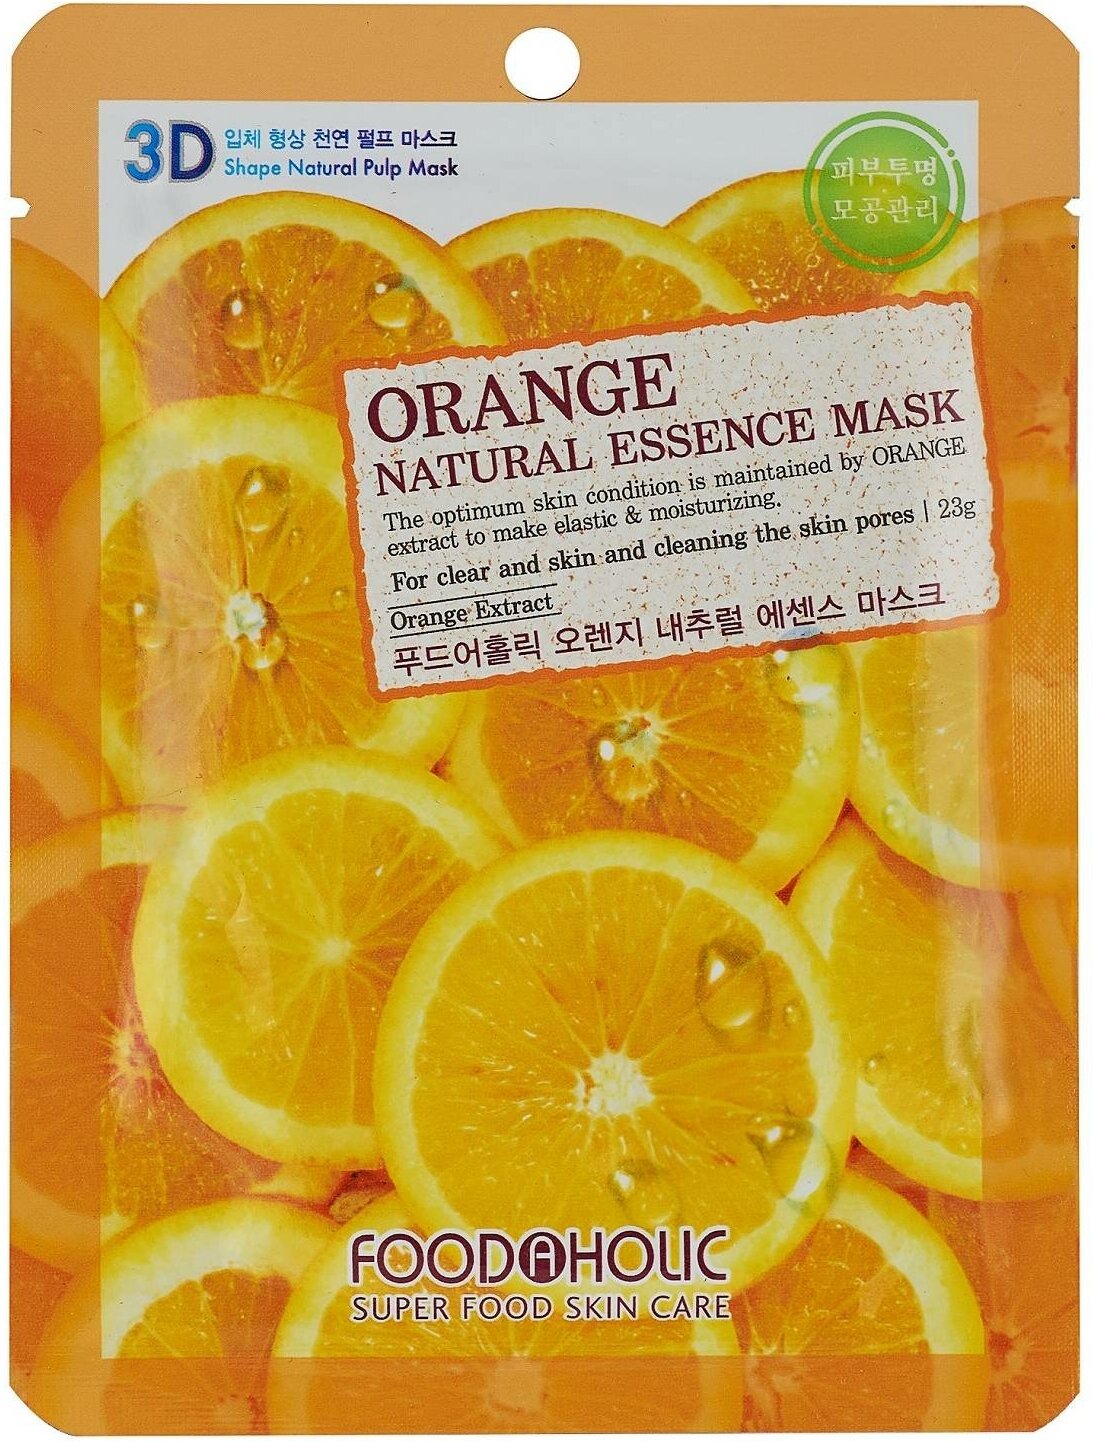 Тканевая 3D маска FOOD A HOLIC с экстрактом апельсина для сужения пор и улучшения цвета лица Orange Natural Essence Mask, 23 г